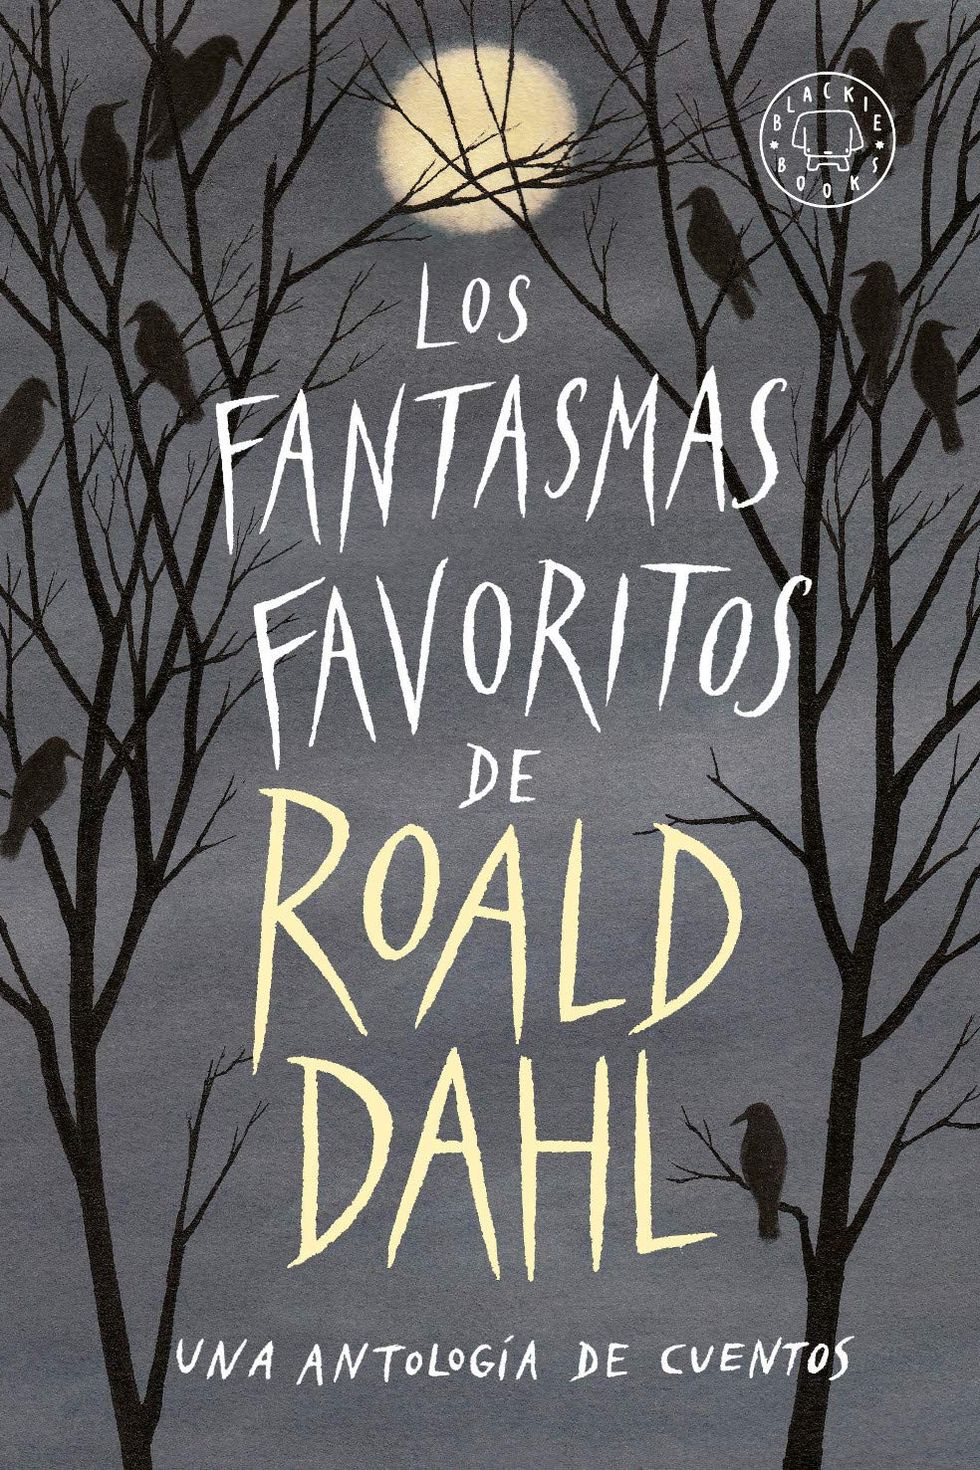 Los fantasmas favoritos de Roald Dahl